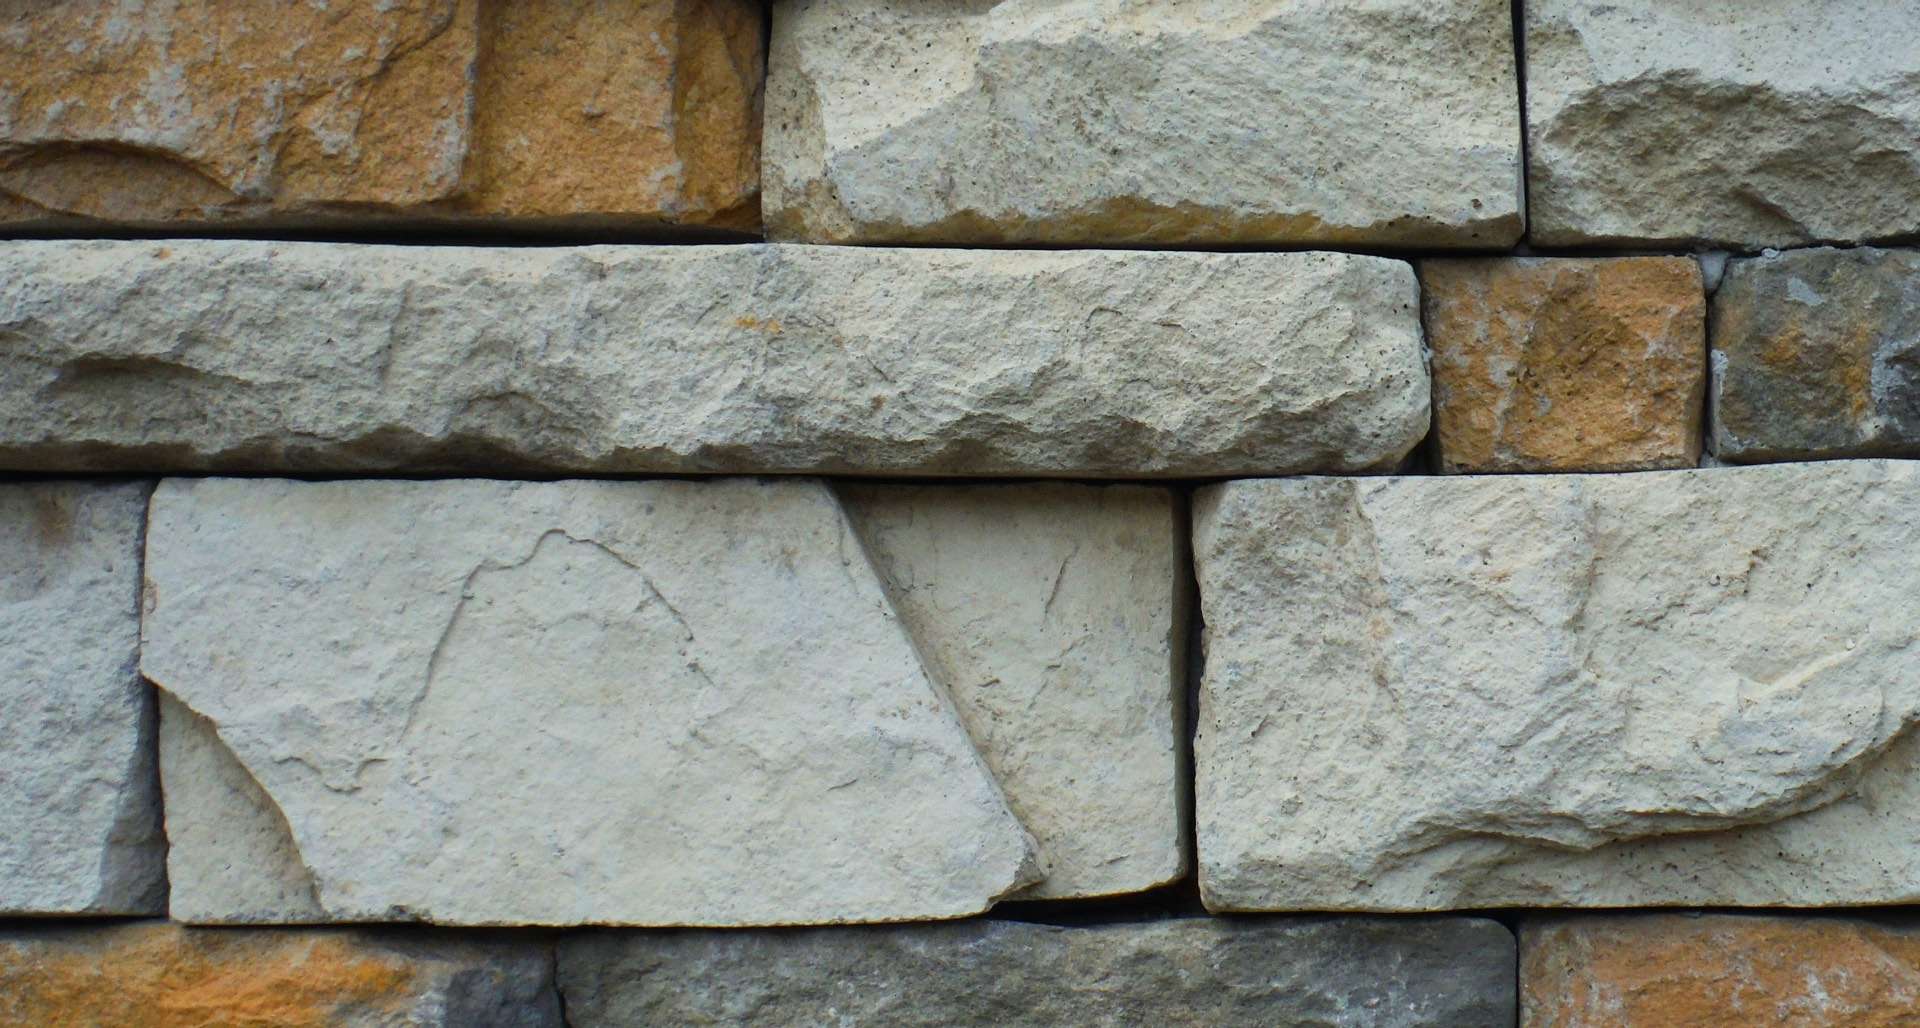 brick and stone work